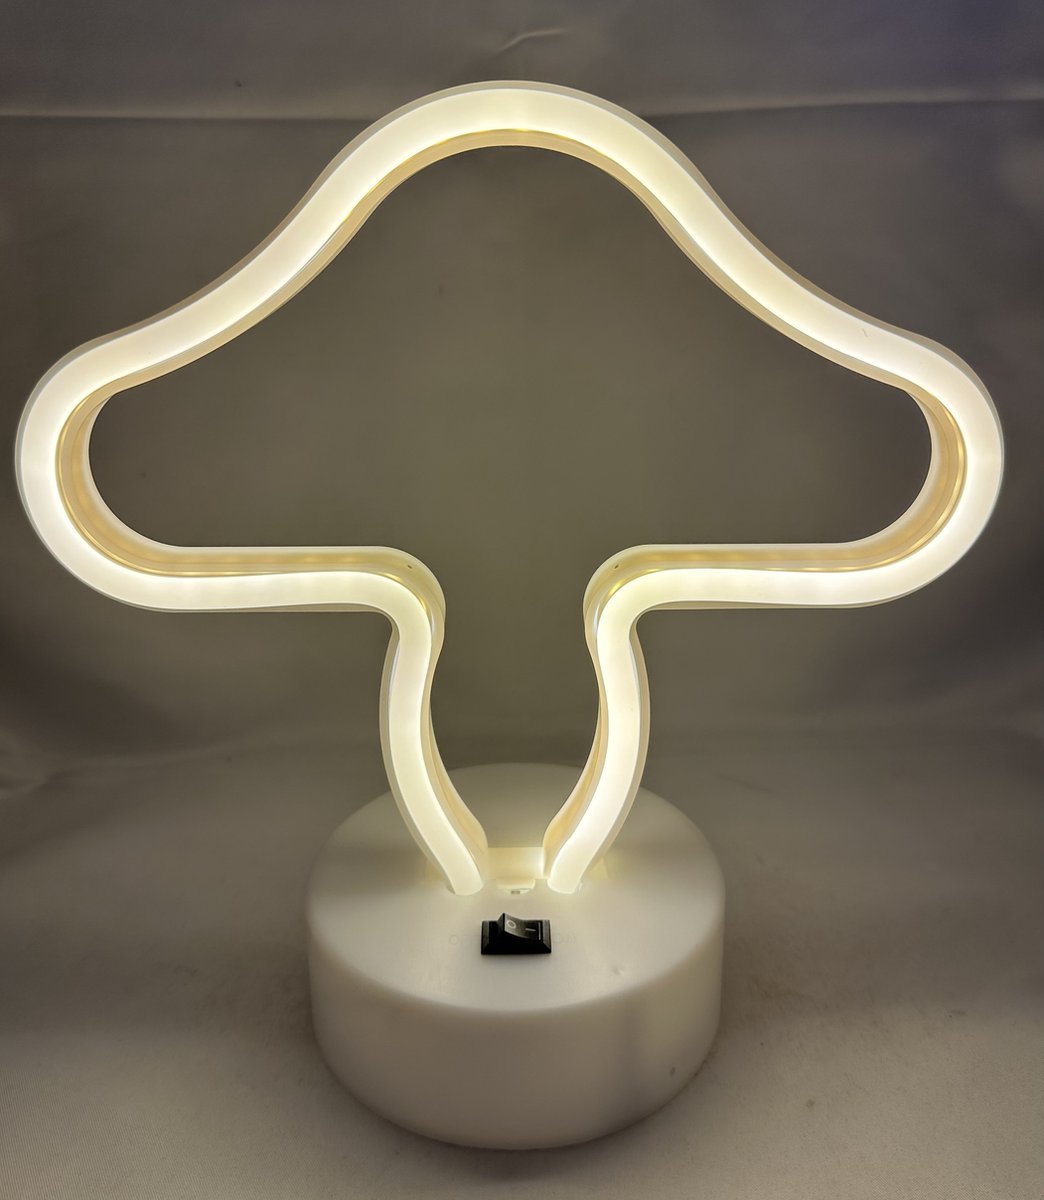 LED mushroom lamp met neonlicht - witte neon verlichting - 20 x 20 x 10 cm - Werkt op batterijen en USB - Tafellamp - Nachtlamp - Decoratieve verlichting - Woonaccessoires